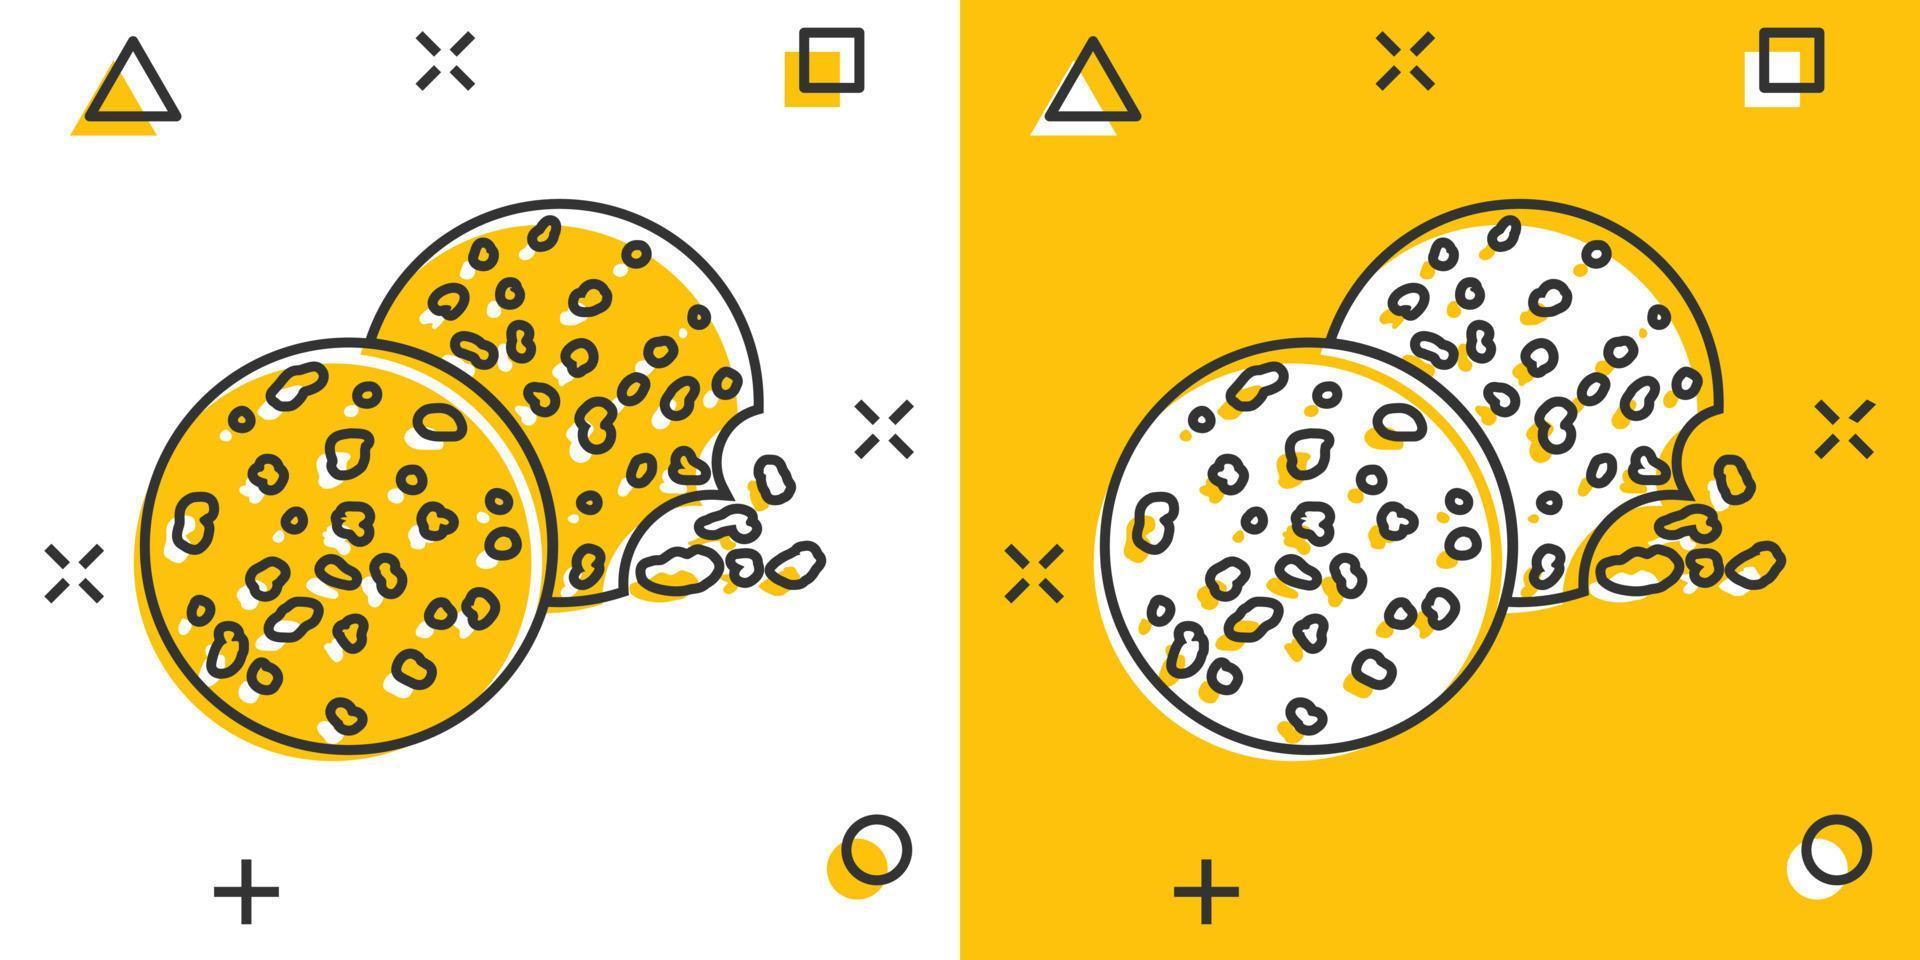 Vektor-Cartoon-Cookie-Symbol im Comic-Stil. Chip Keks Zeichen Abbildung Piktogramm. gebäck plätzchen business splash effekt konzept. vektor